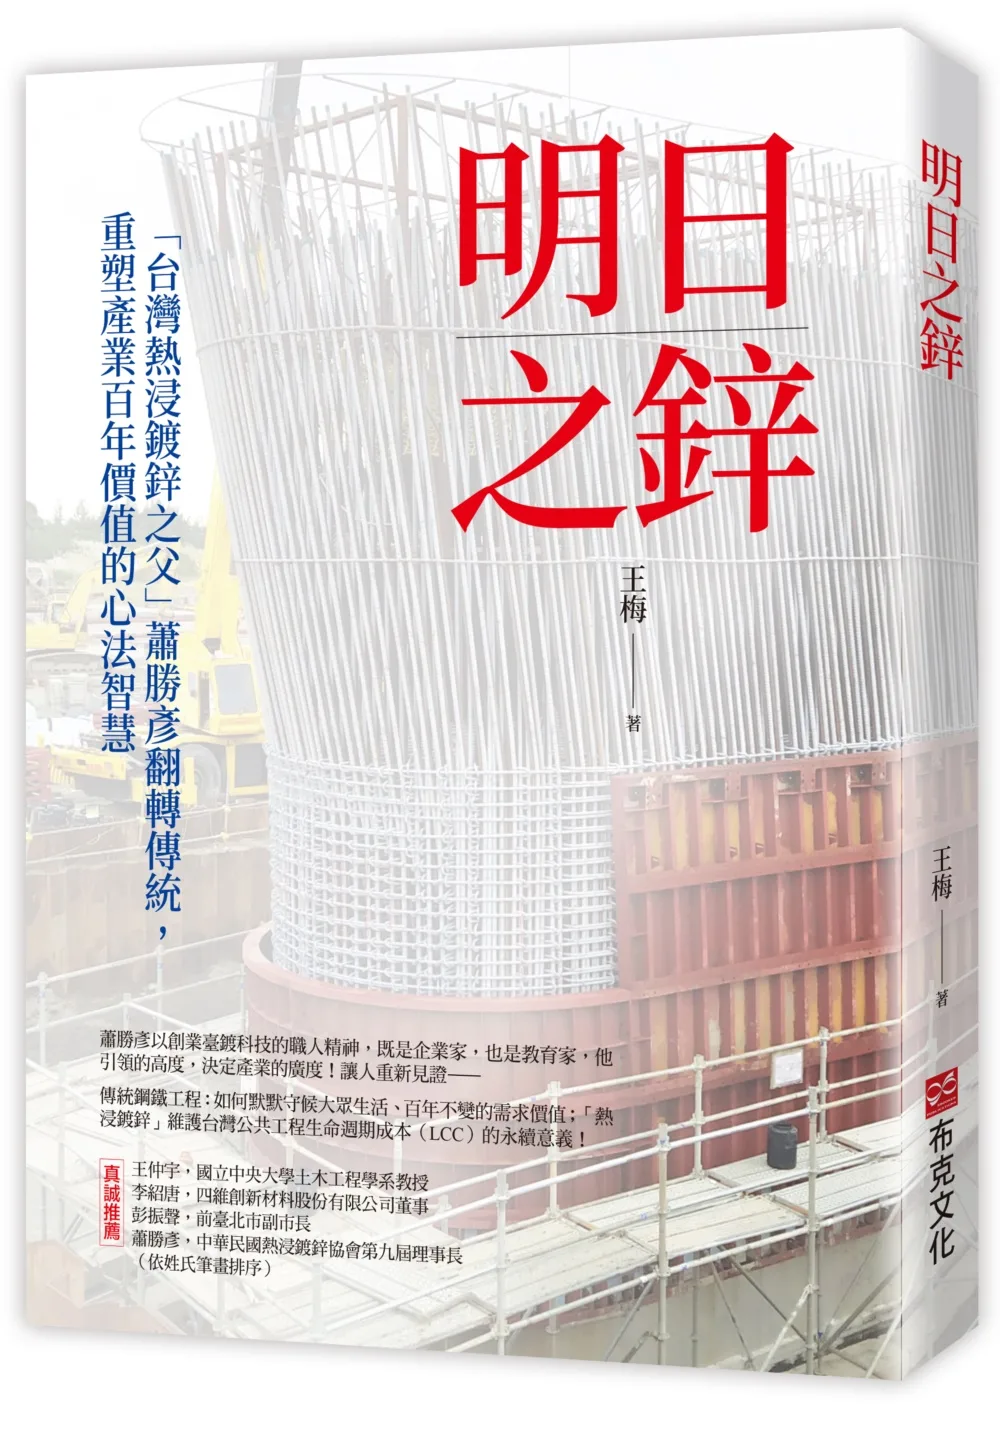 明日之鋅—「台灣熱浸鍍鋅之父」蕭勝彥翻轉傳統，重塑產業百年價值的心法智慧